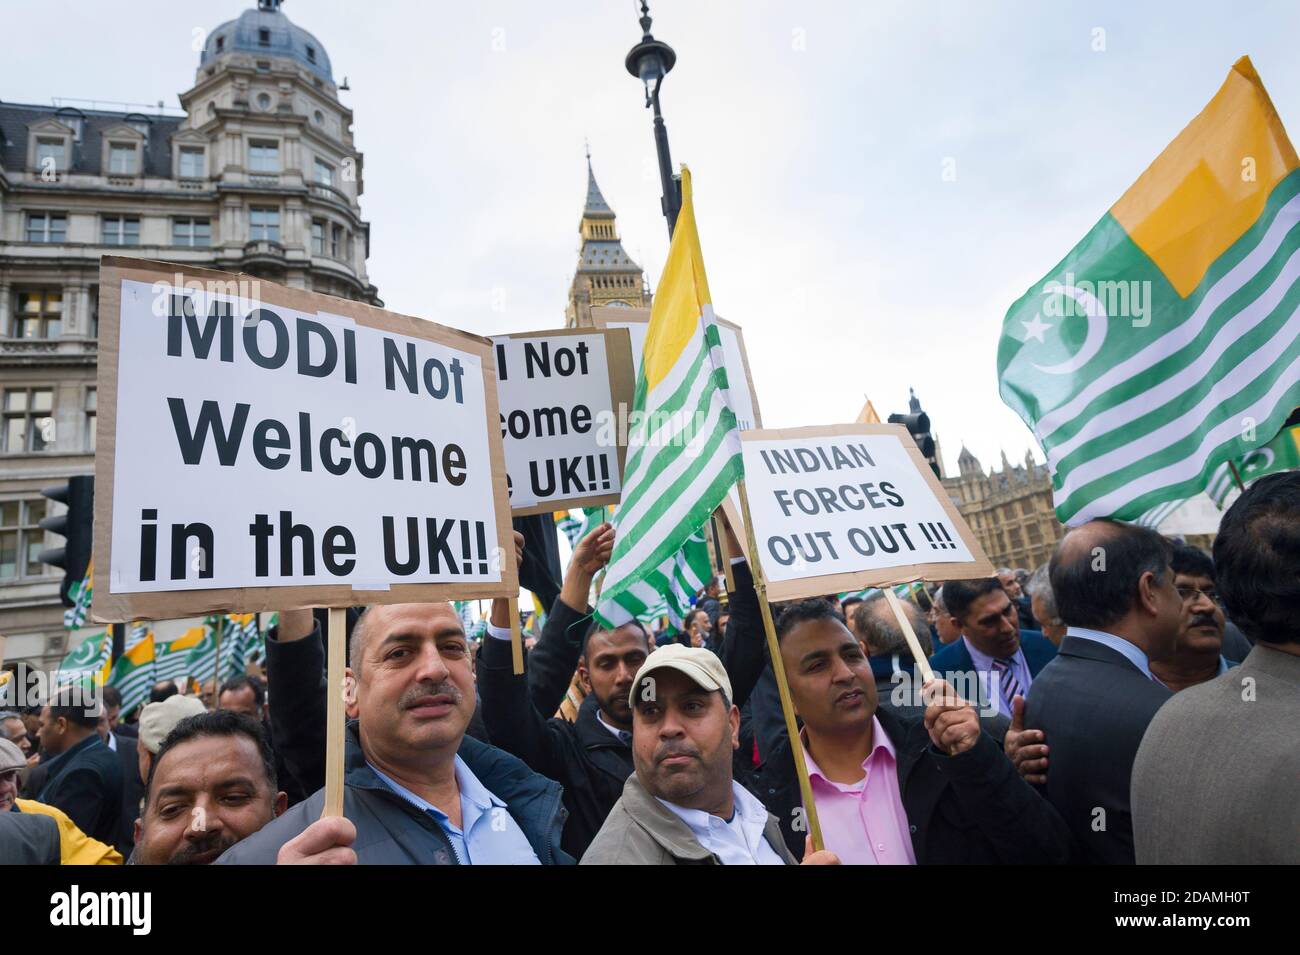 Une manifestation contre la visite d'État des premiers ministres indiens Narendra Modi en Grande-Bretagne. Parliament Square, Westminster, Londres, Royaume-Uni. 12 novembre 2015 Banque D'Images